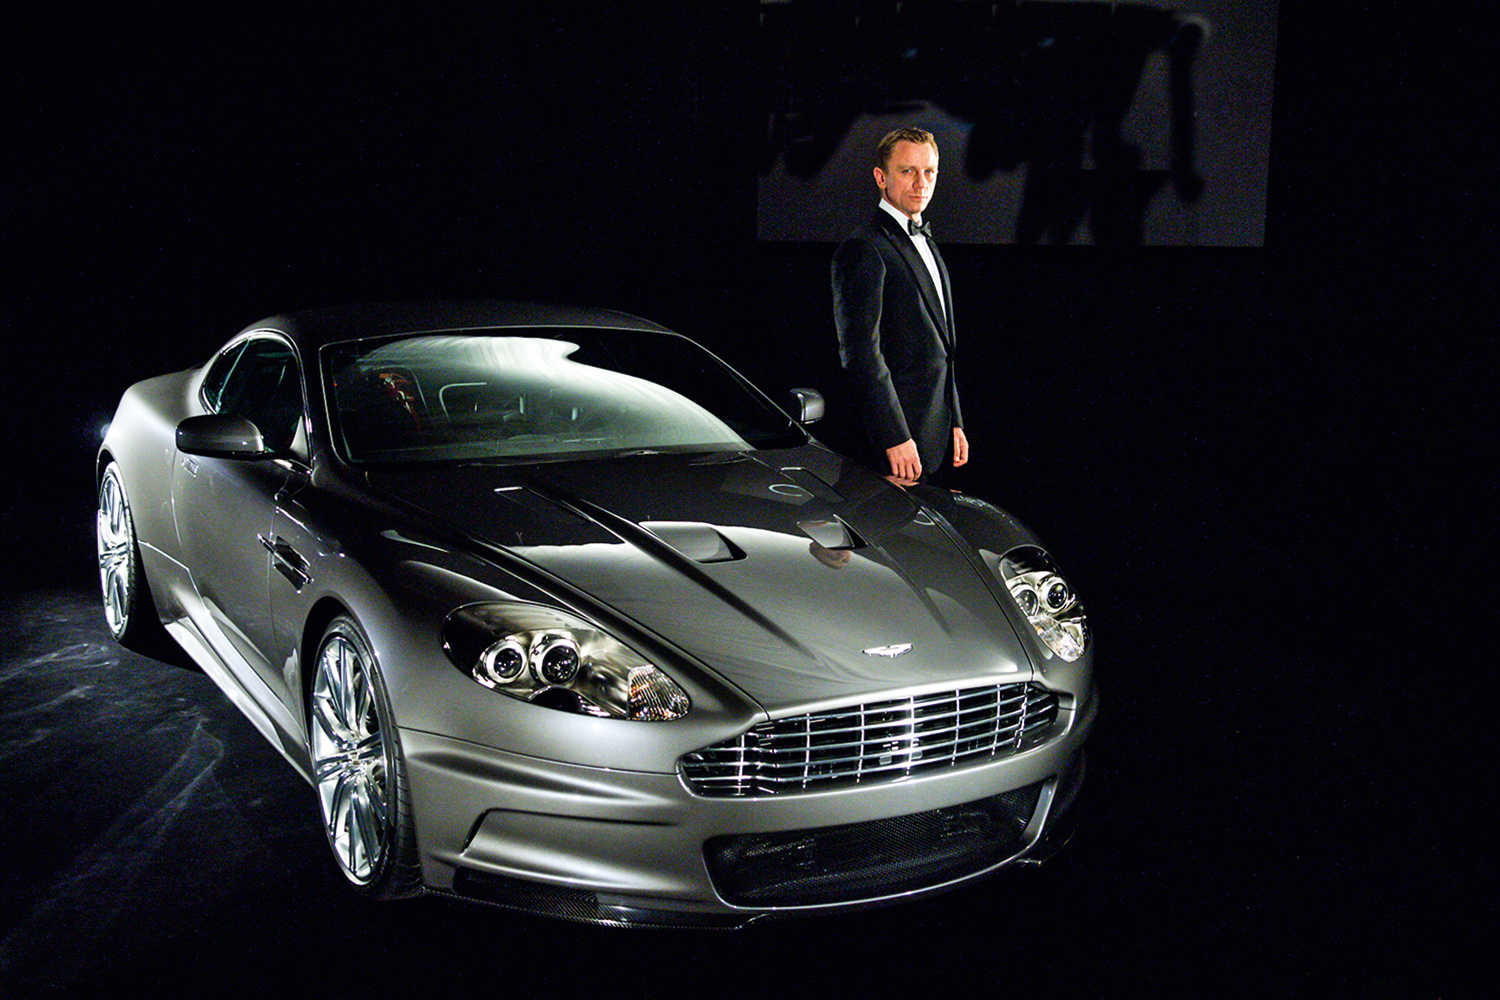 VELHOS AMIGOS - James Bond e o modelo DBS v12: desafios da nova era -